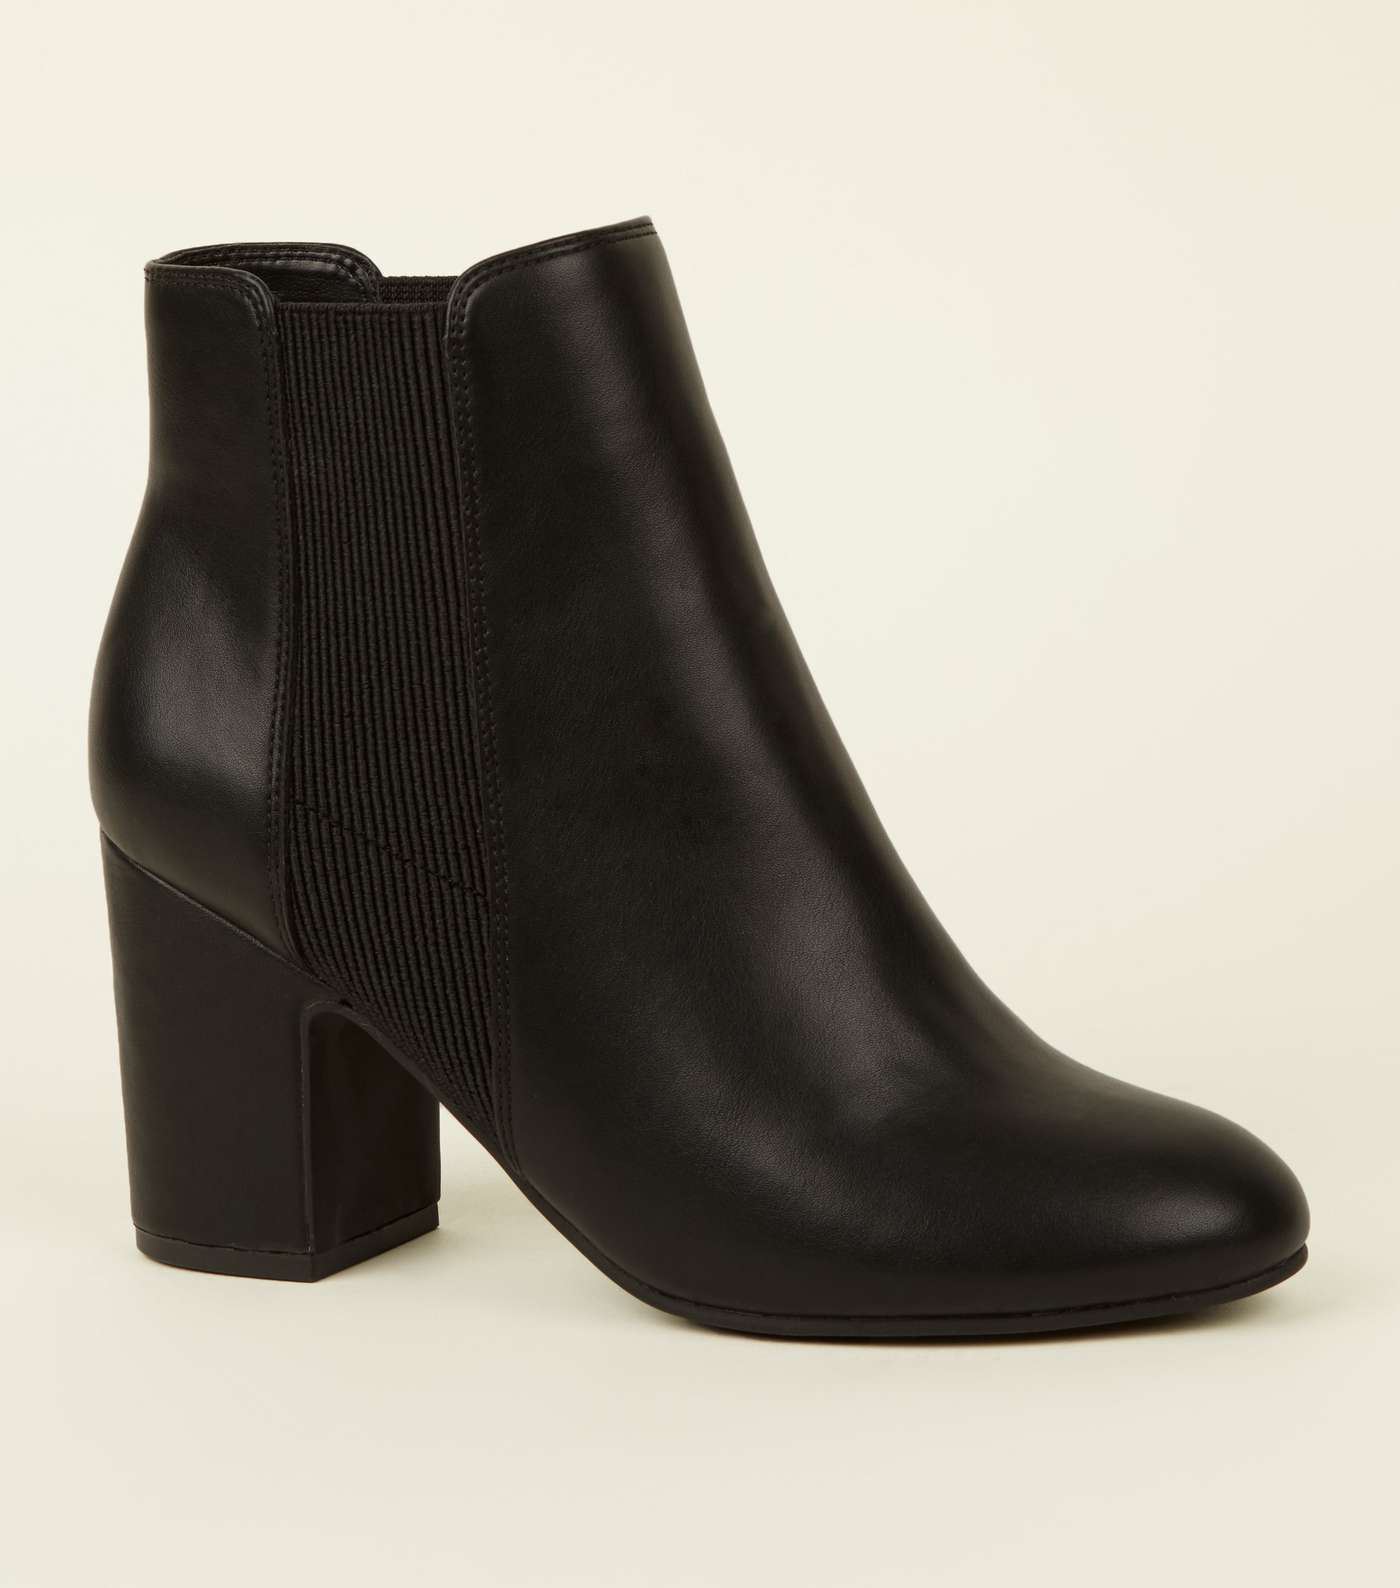 Black Leather-Look Block Heel Chelsea Boots